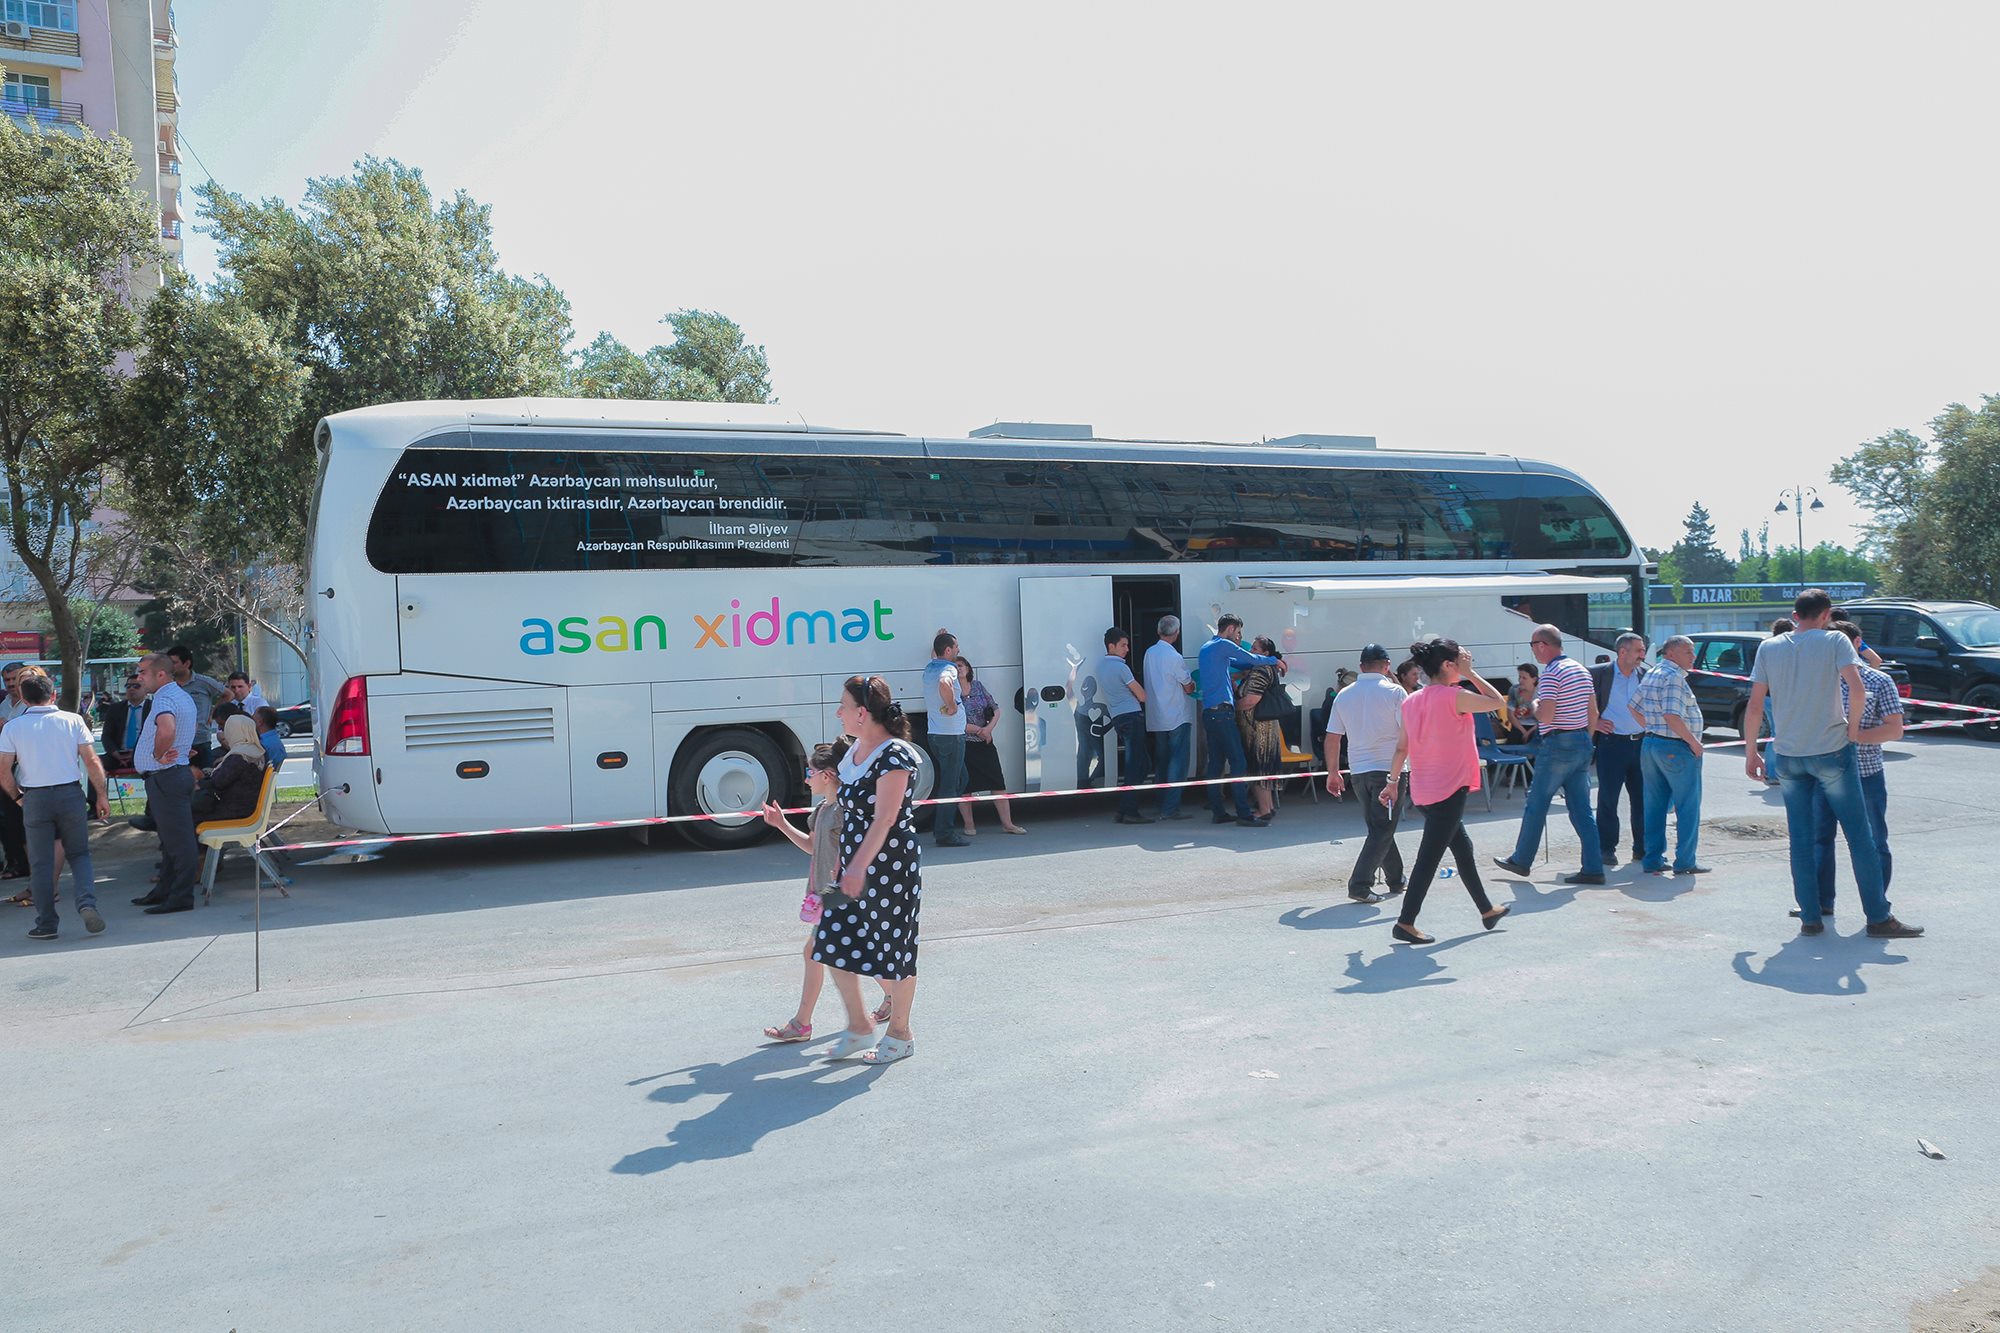 Передвижной ASAN xidmət оказывает услуги жителем Баку в поселке Говсан